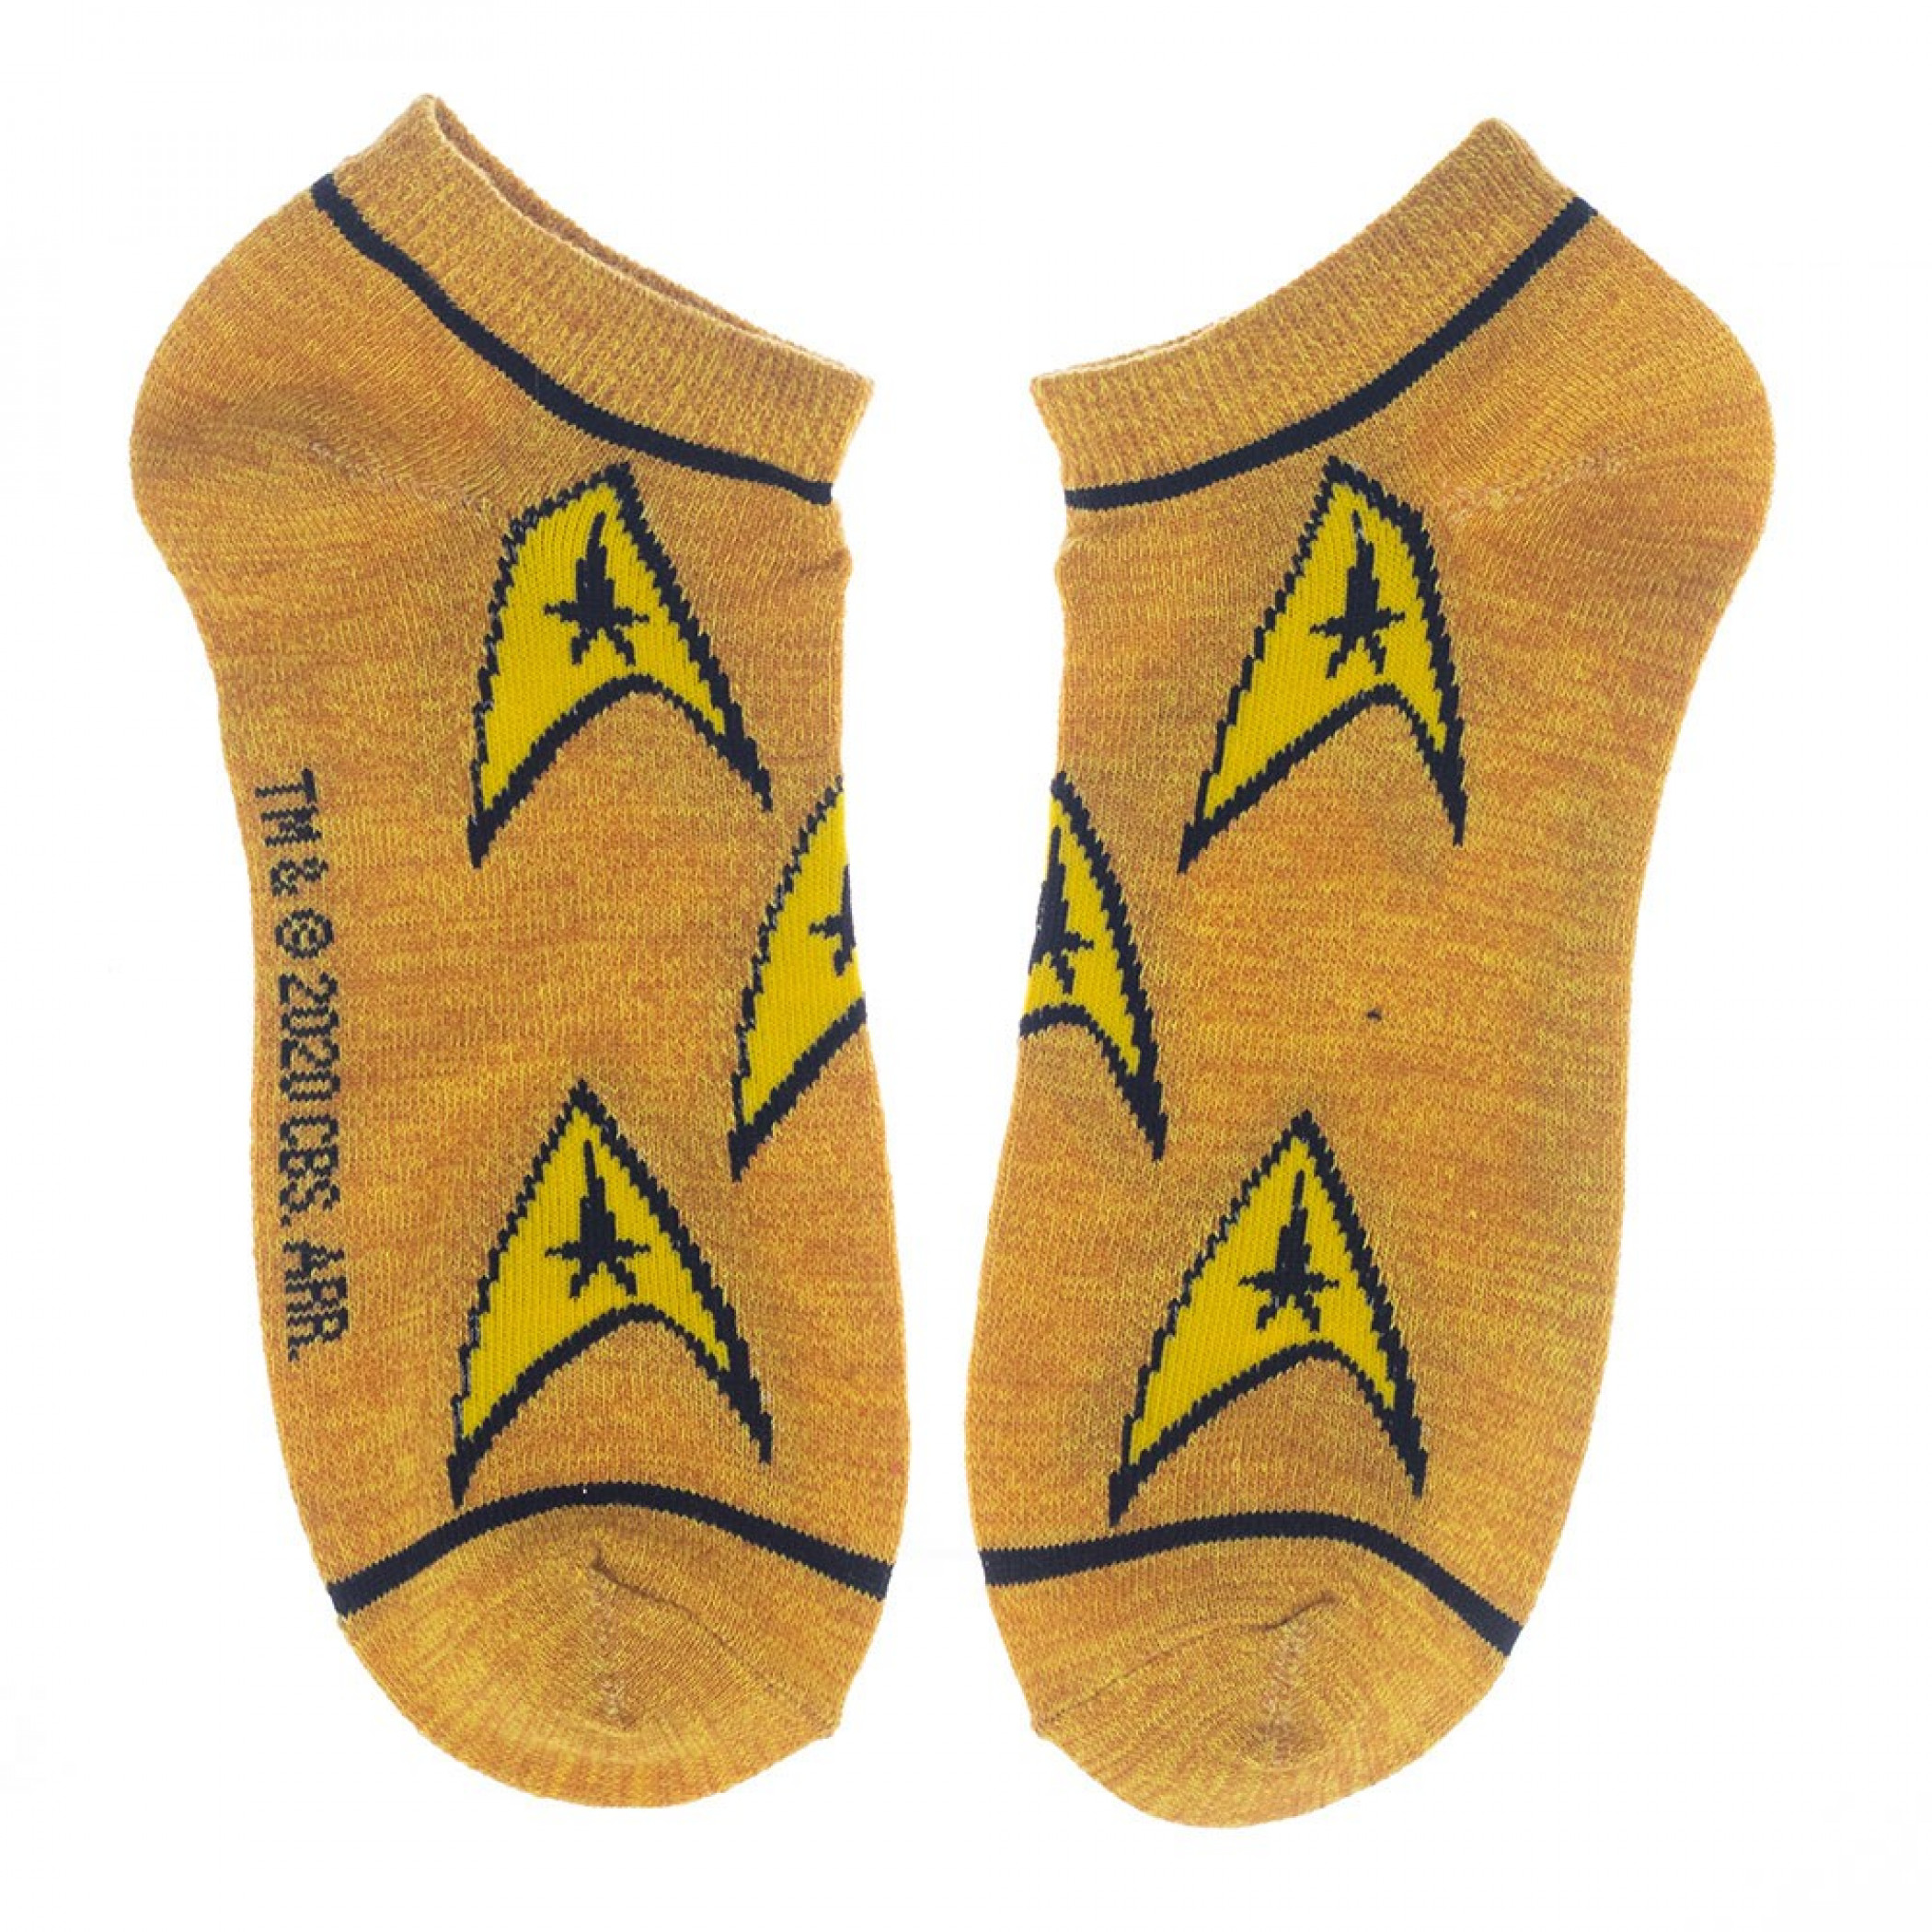 Star Trek 5-Pair Pack of Women's Ankle Socks